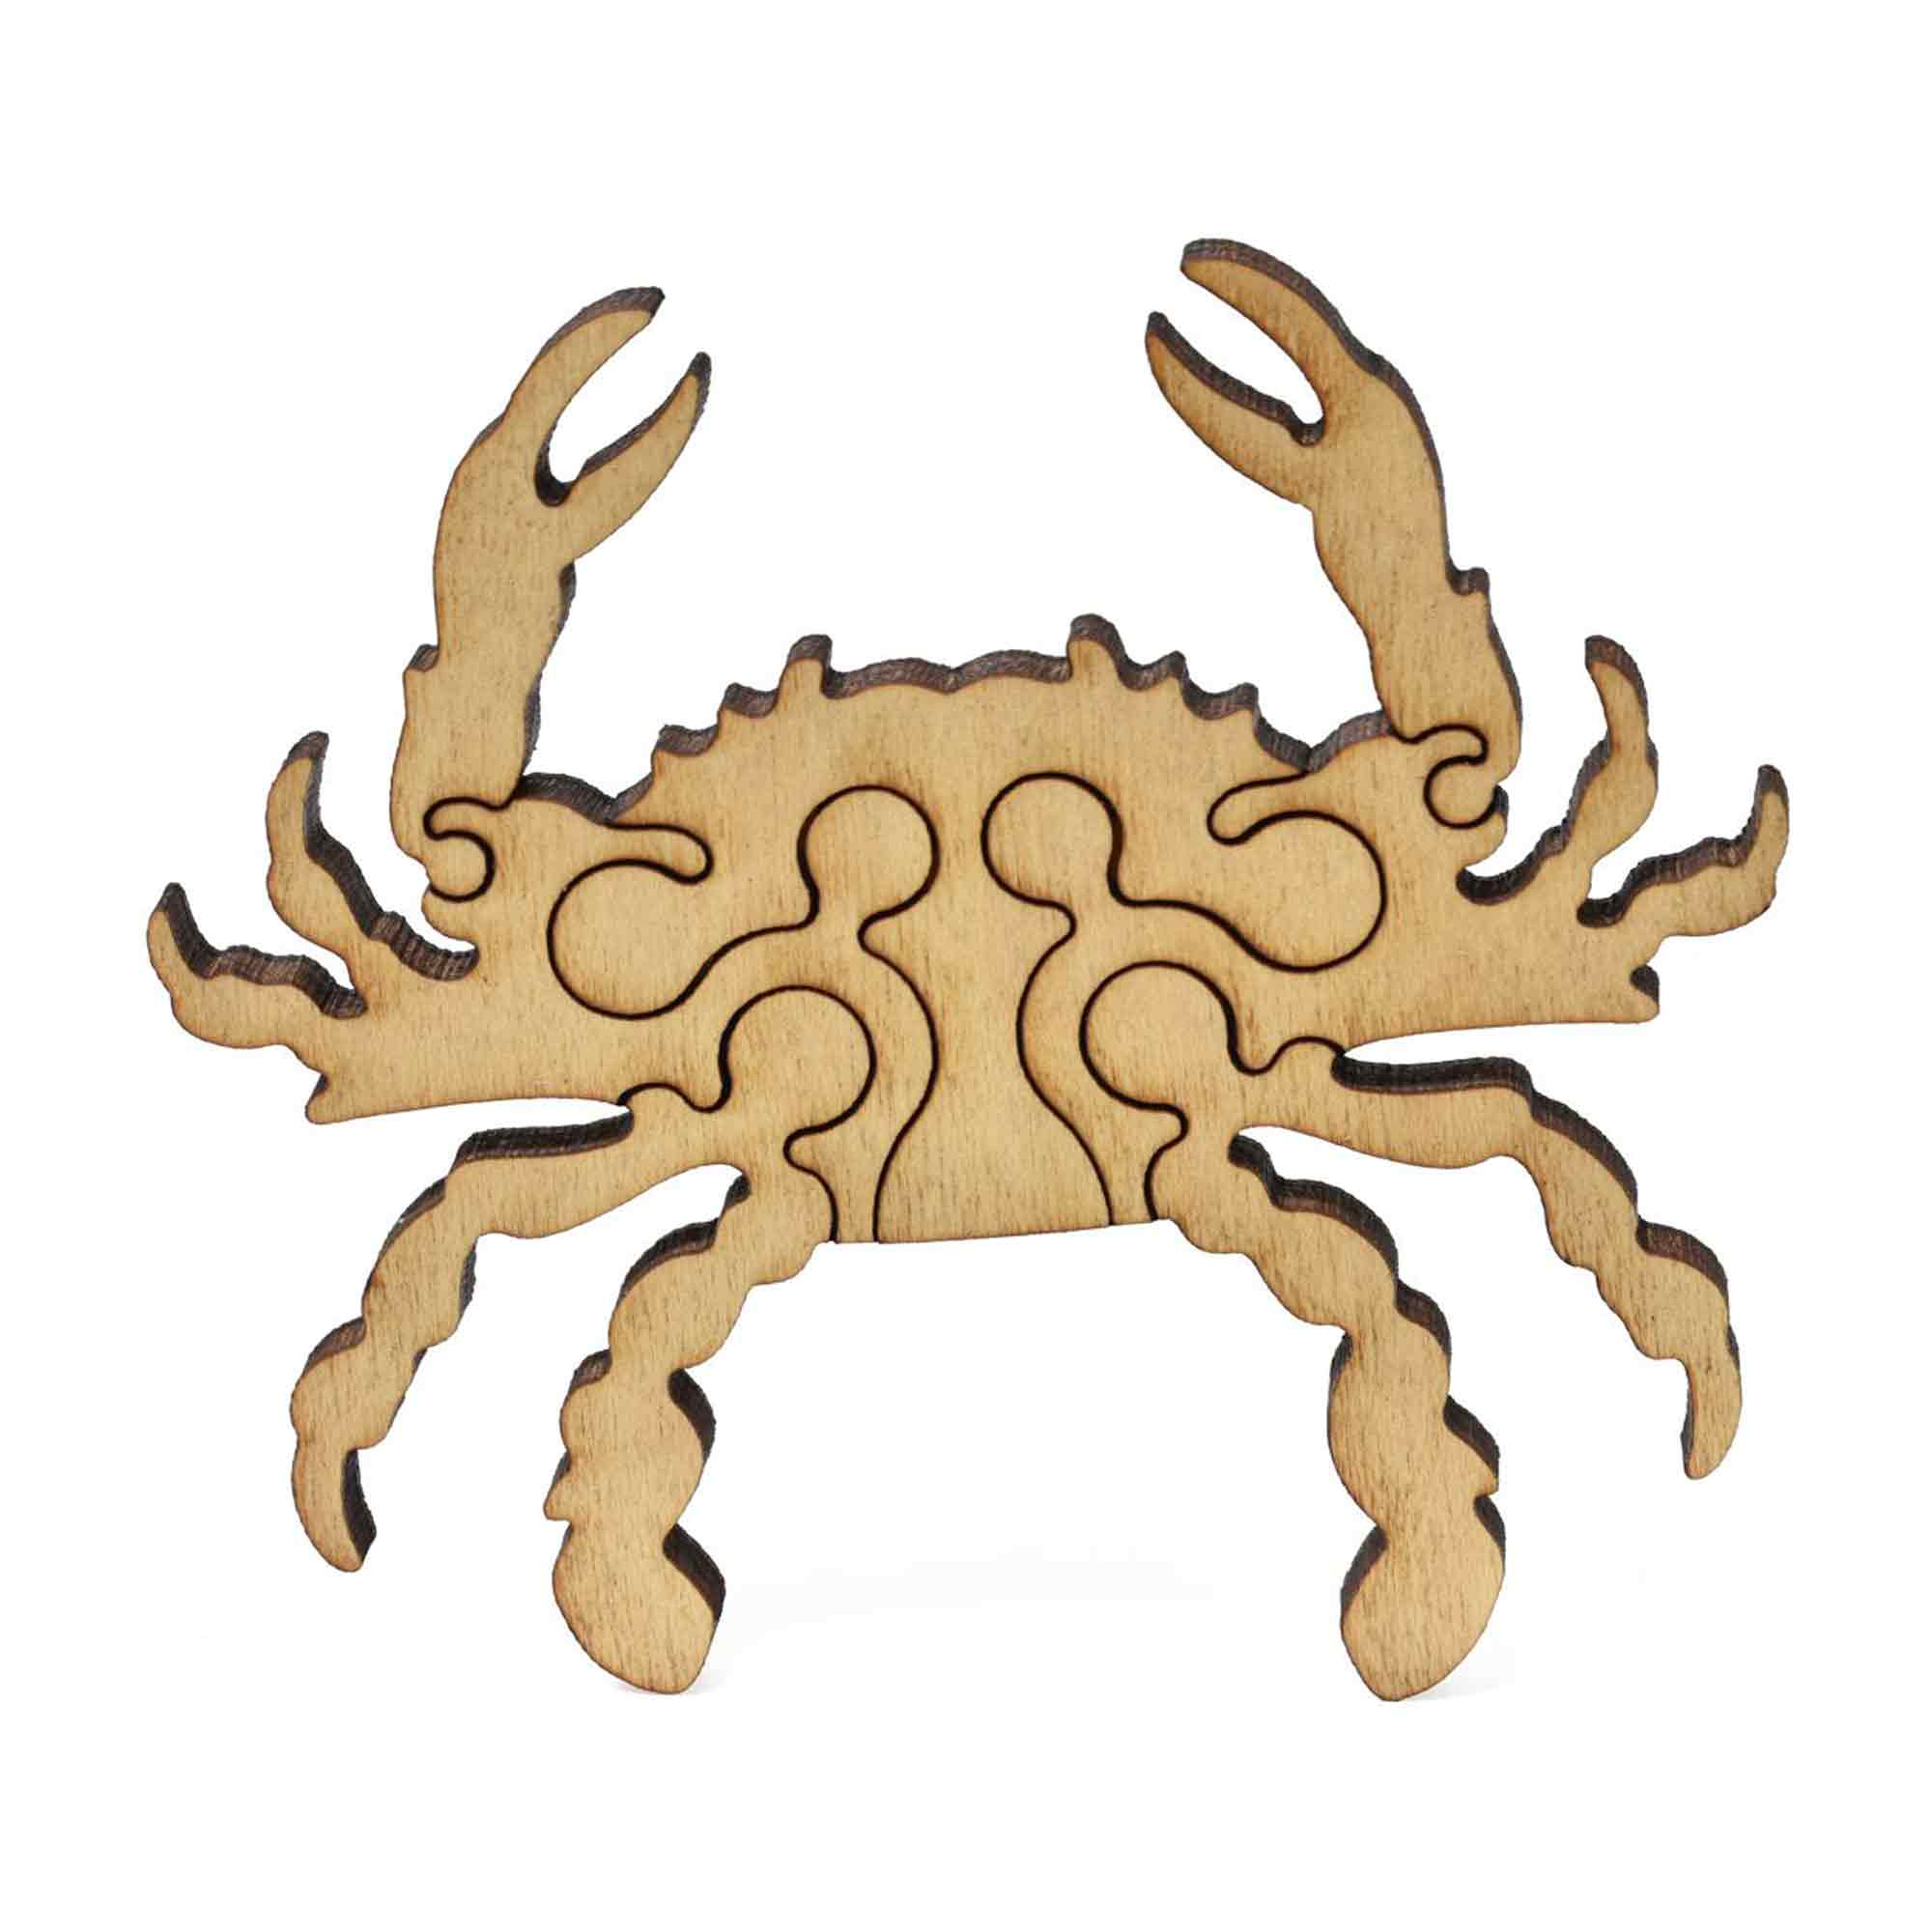 Xplorer Maps Wood Puzzle piece of a crab. 